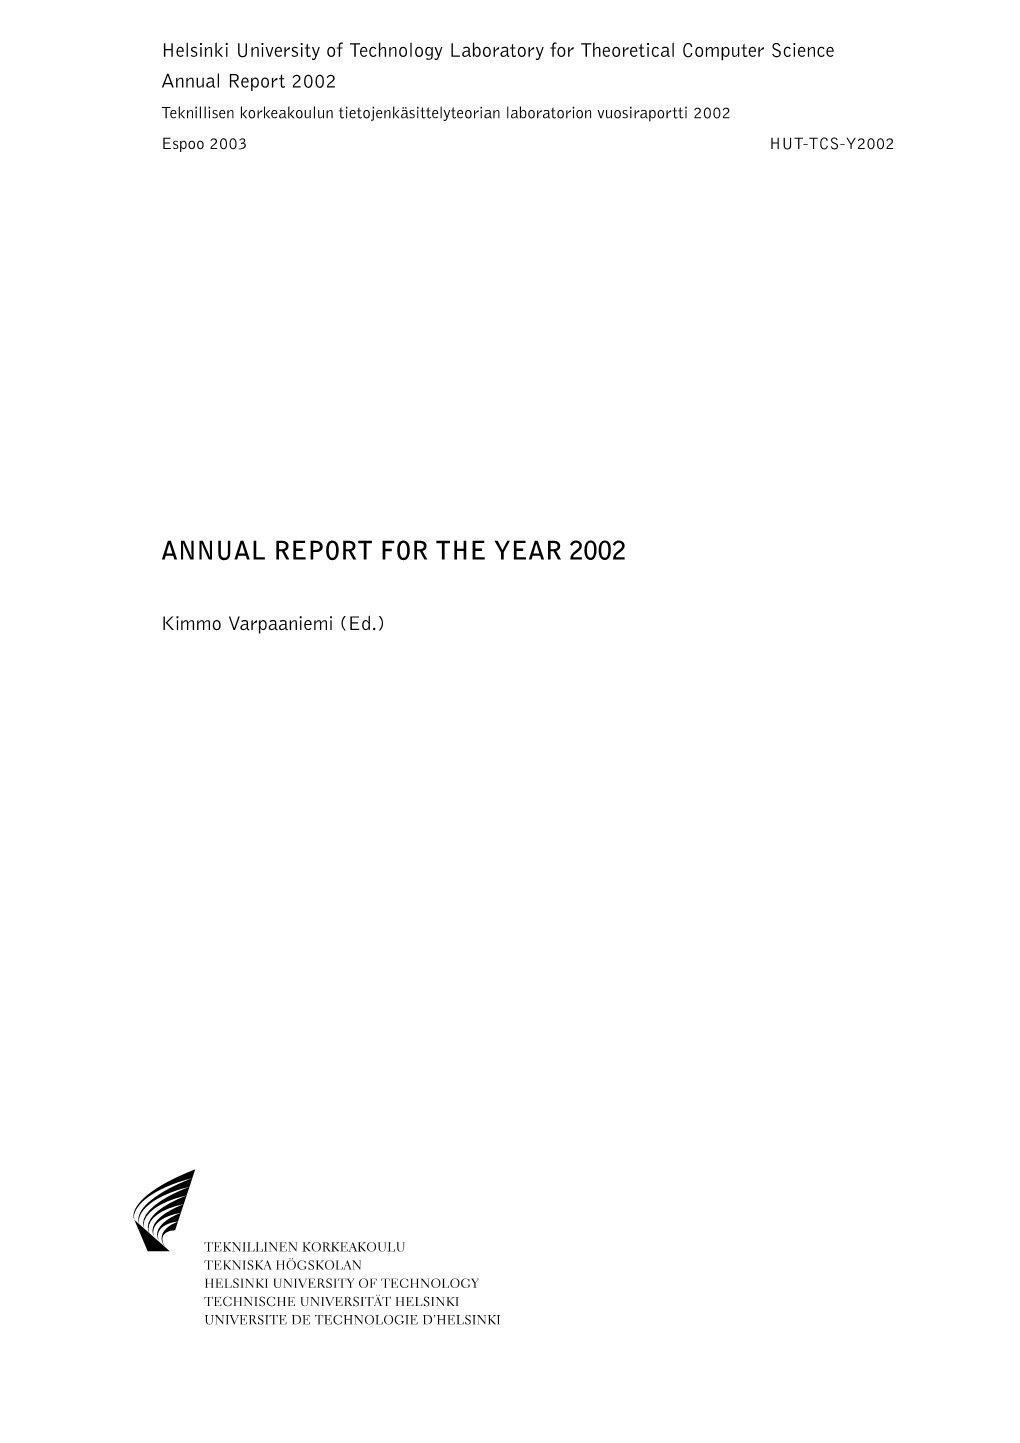 Annual Report 2002 Teknillisen Korkeakoulun Tietojenka¨Sittelyteorian Laboratorion Vuosiraportti 2002 Espoo 2003 HUT-TCS-Y2002